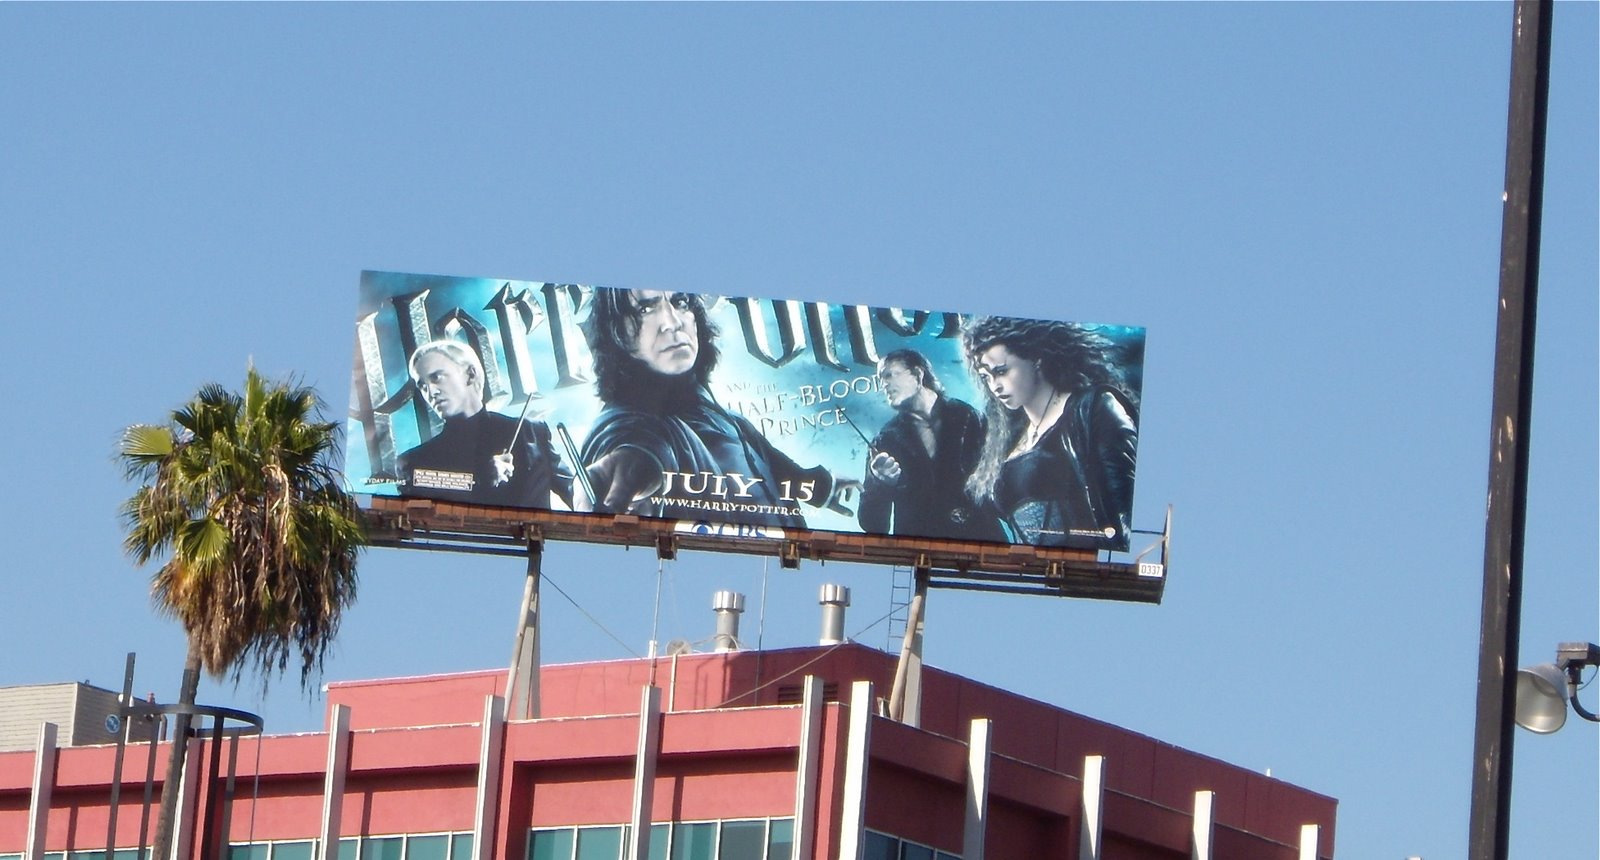 [Harry+Potter+villains+movie+billboard.JPG]